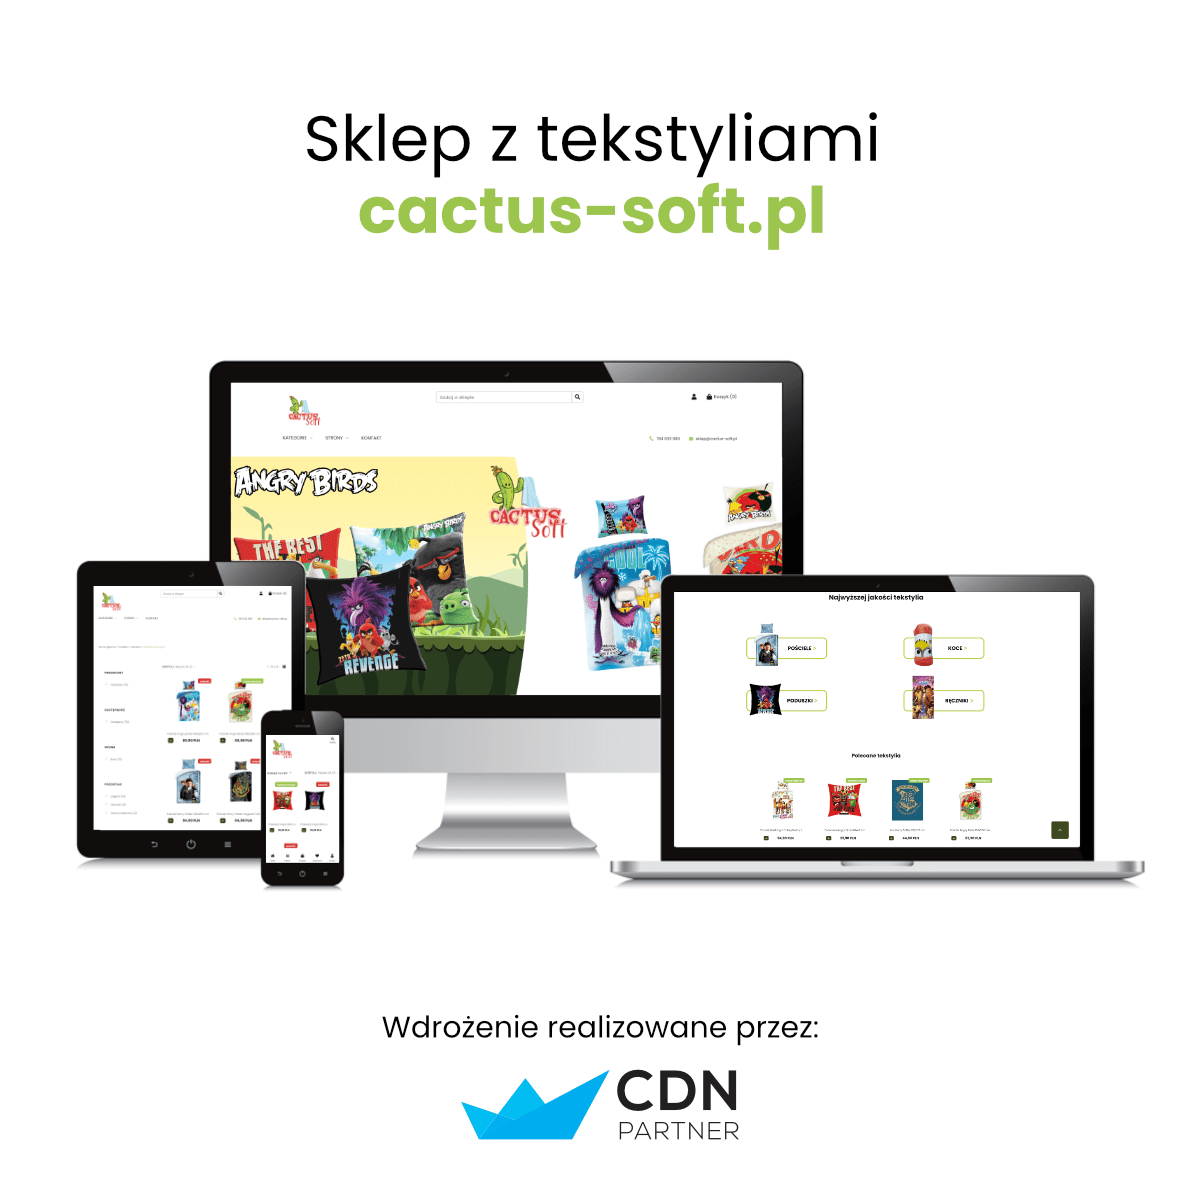 Sklep z tekstyliami Cactus-Soft - wdrożenie realizowane przez CDN-Partner w Krakowie